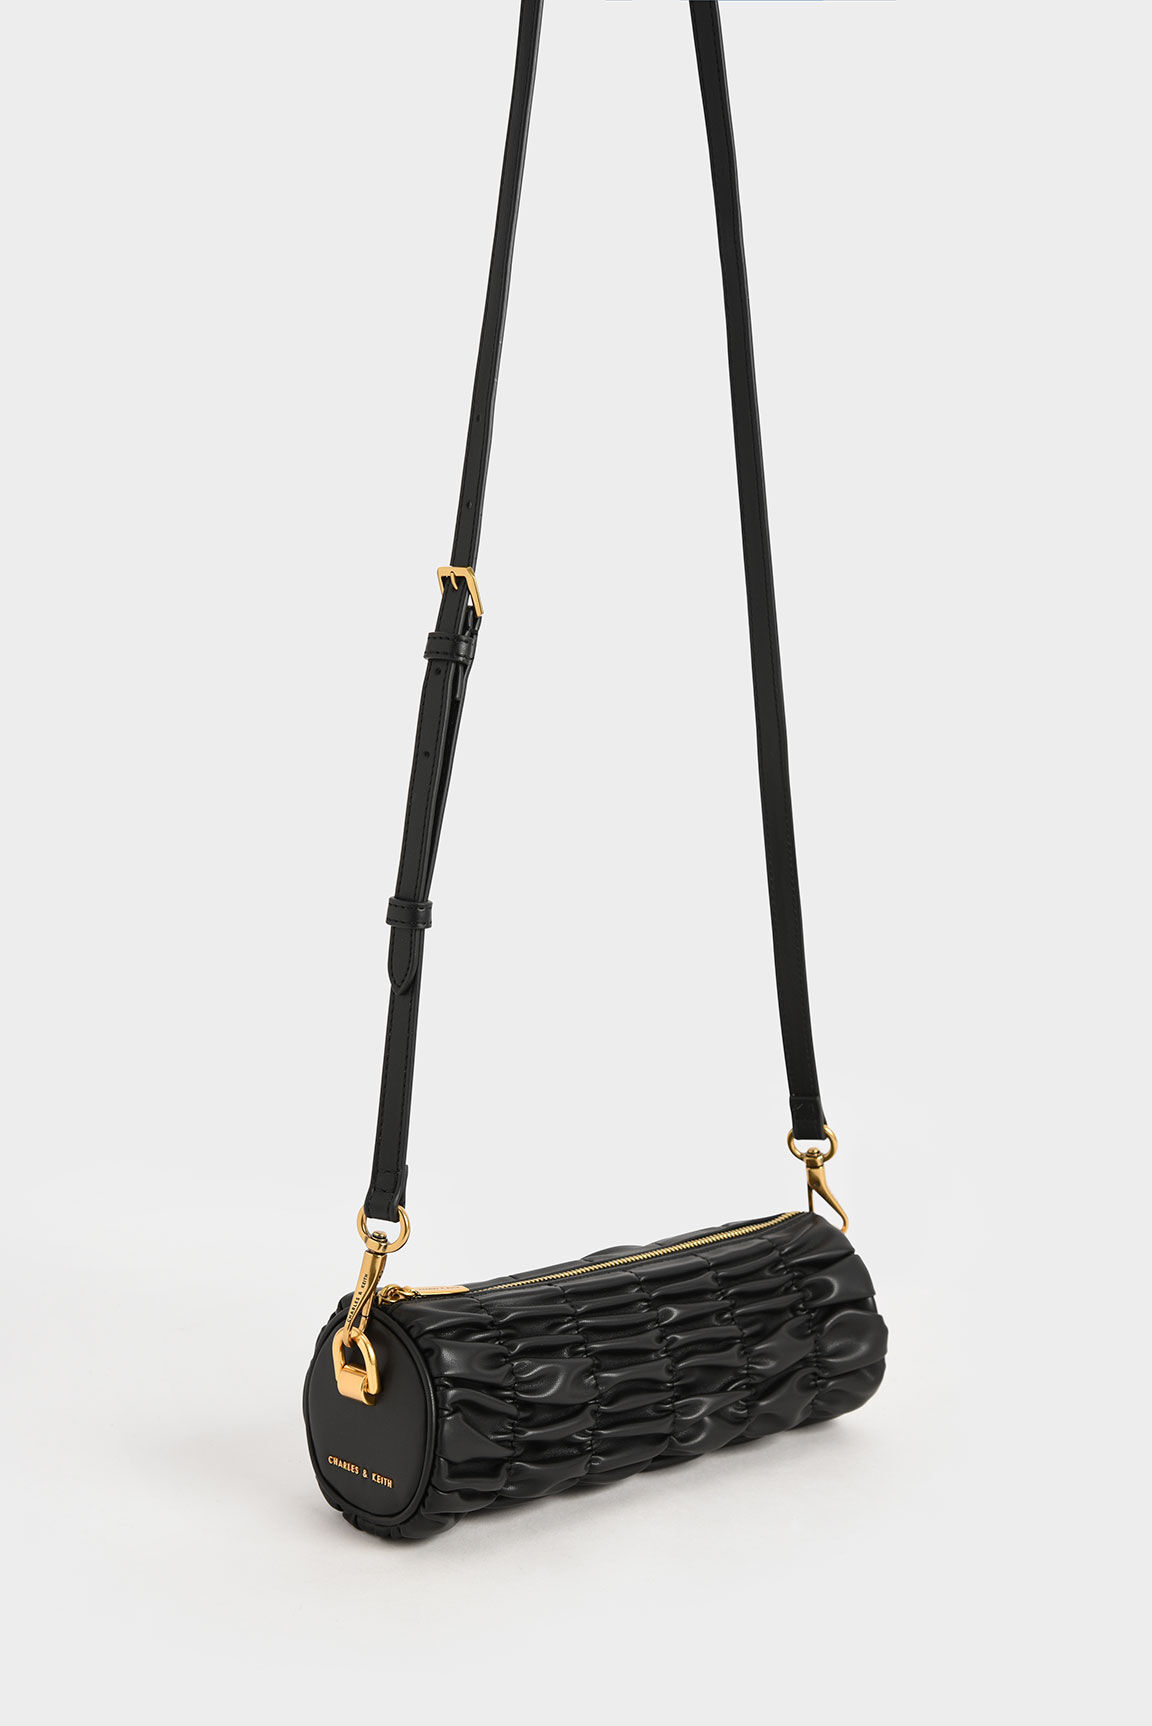 Tallulah Ruched Chain-Handle Shoulder Bag - Black